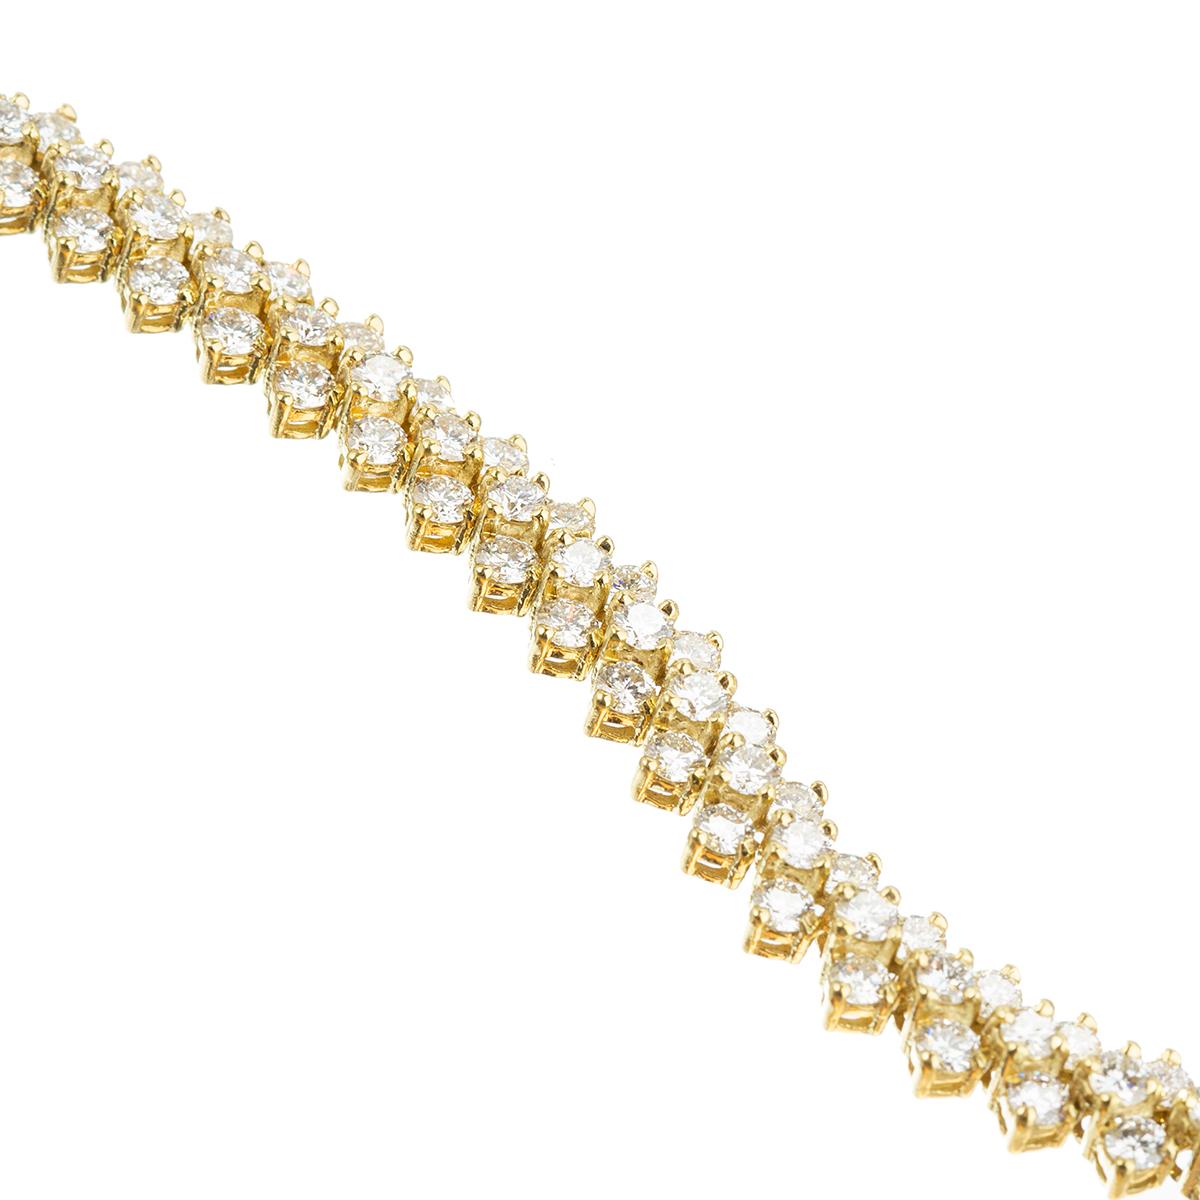 Brilliant Cut Pair of 18k Yellow Gold Diamond Flexible Line Bracelets For Sale